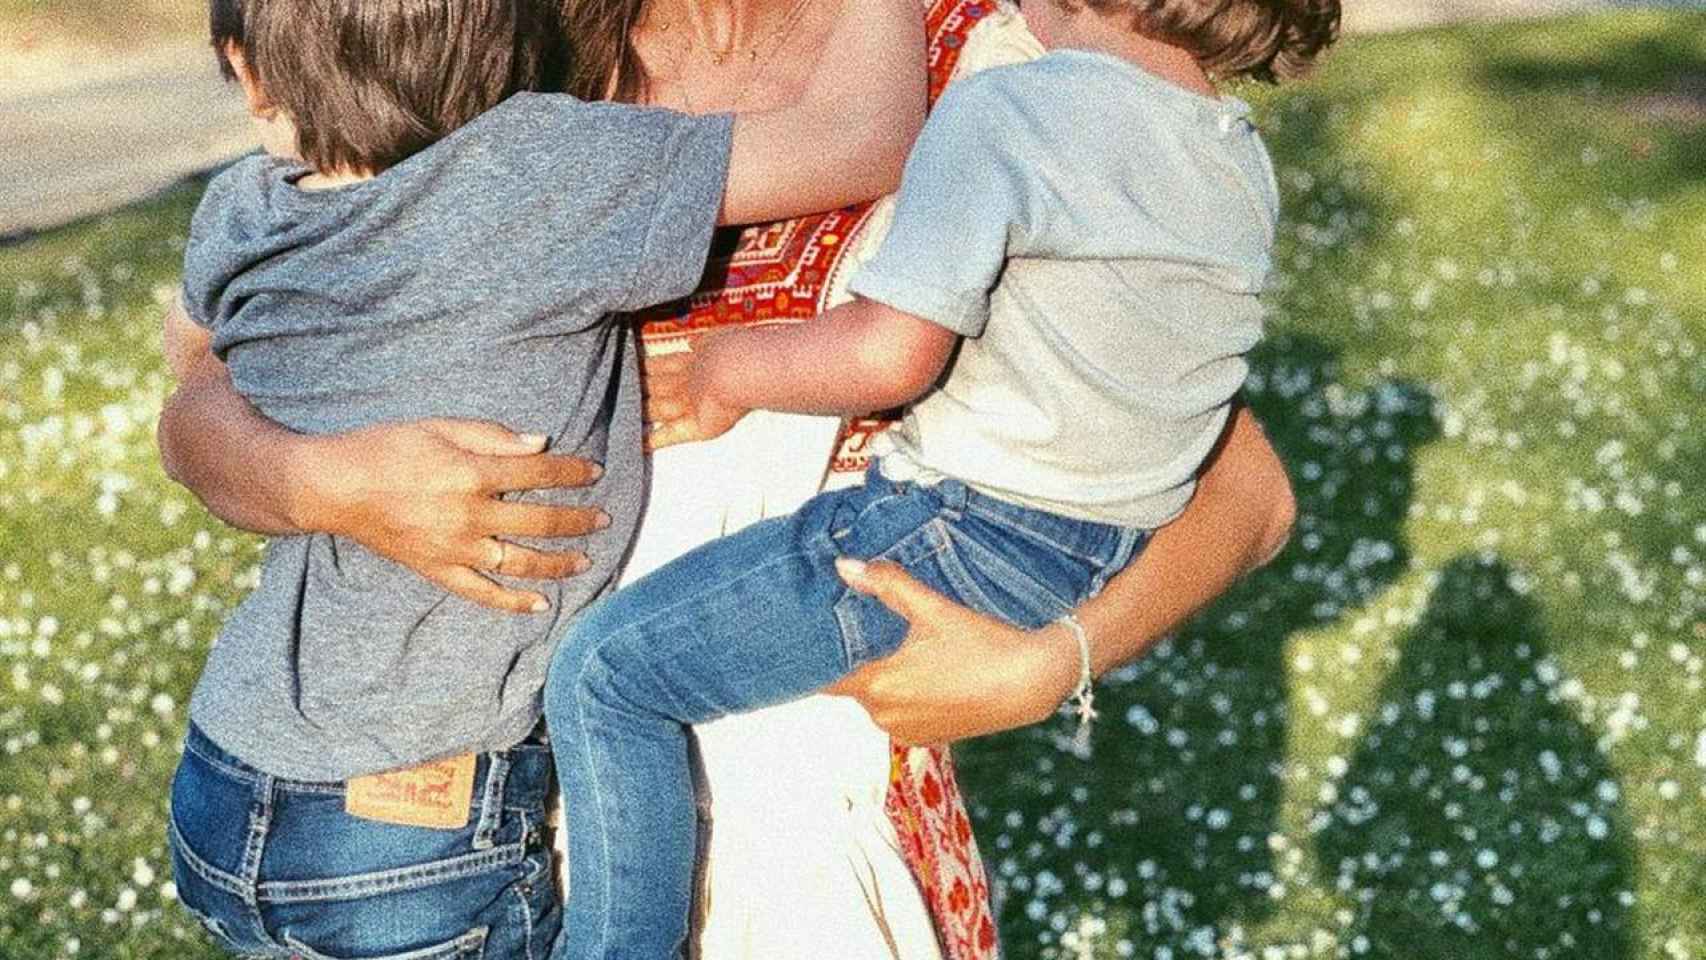 Sara con sus hijo en brazos en una imagen de redes sociales.